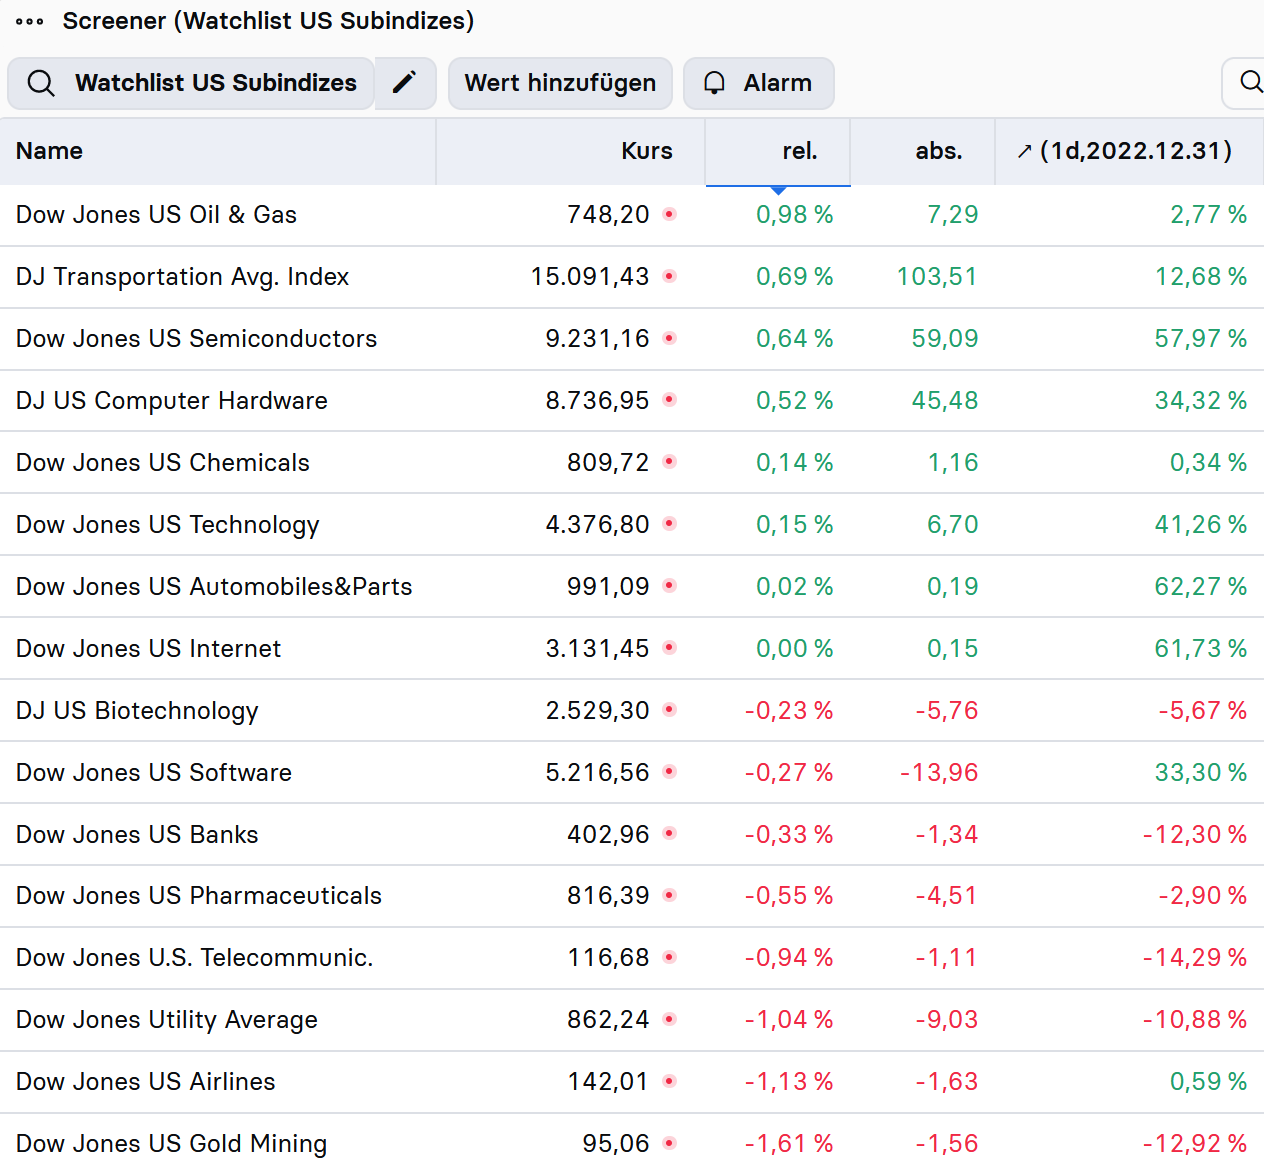 stock3-Index-Check-USA-Folgt-in-dieser-Woche-der-finale-Peak-Chartanalyse-Bastian-Galuschka-stock3.com-1